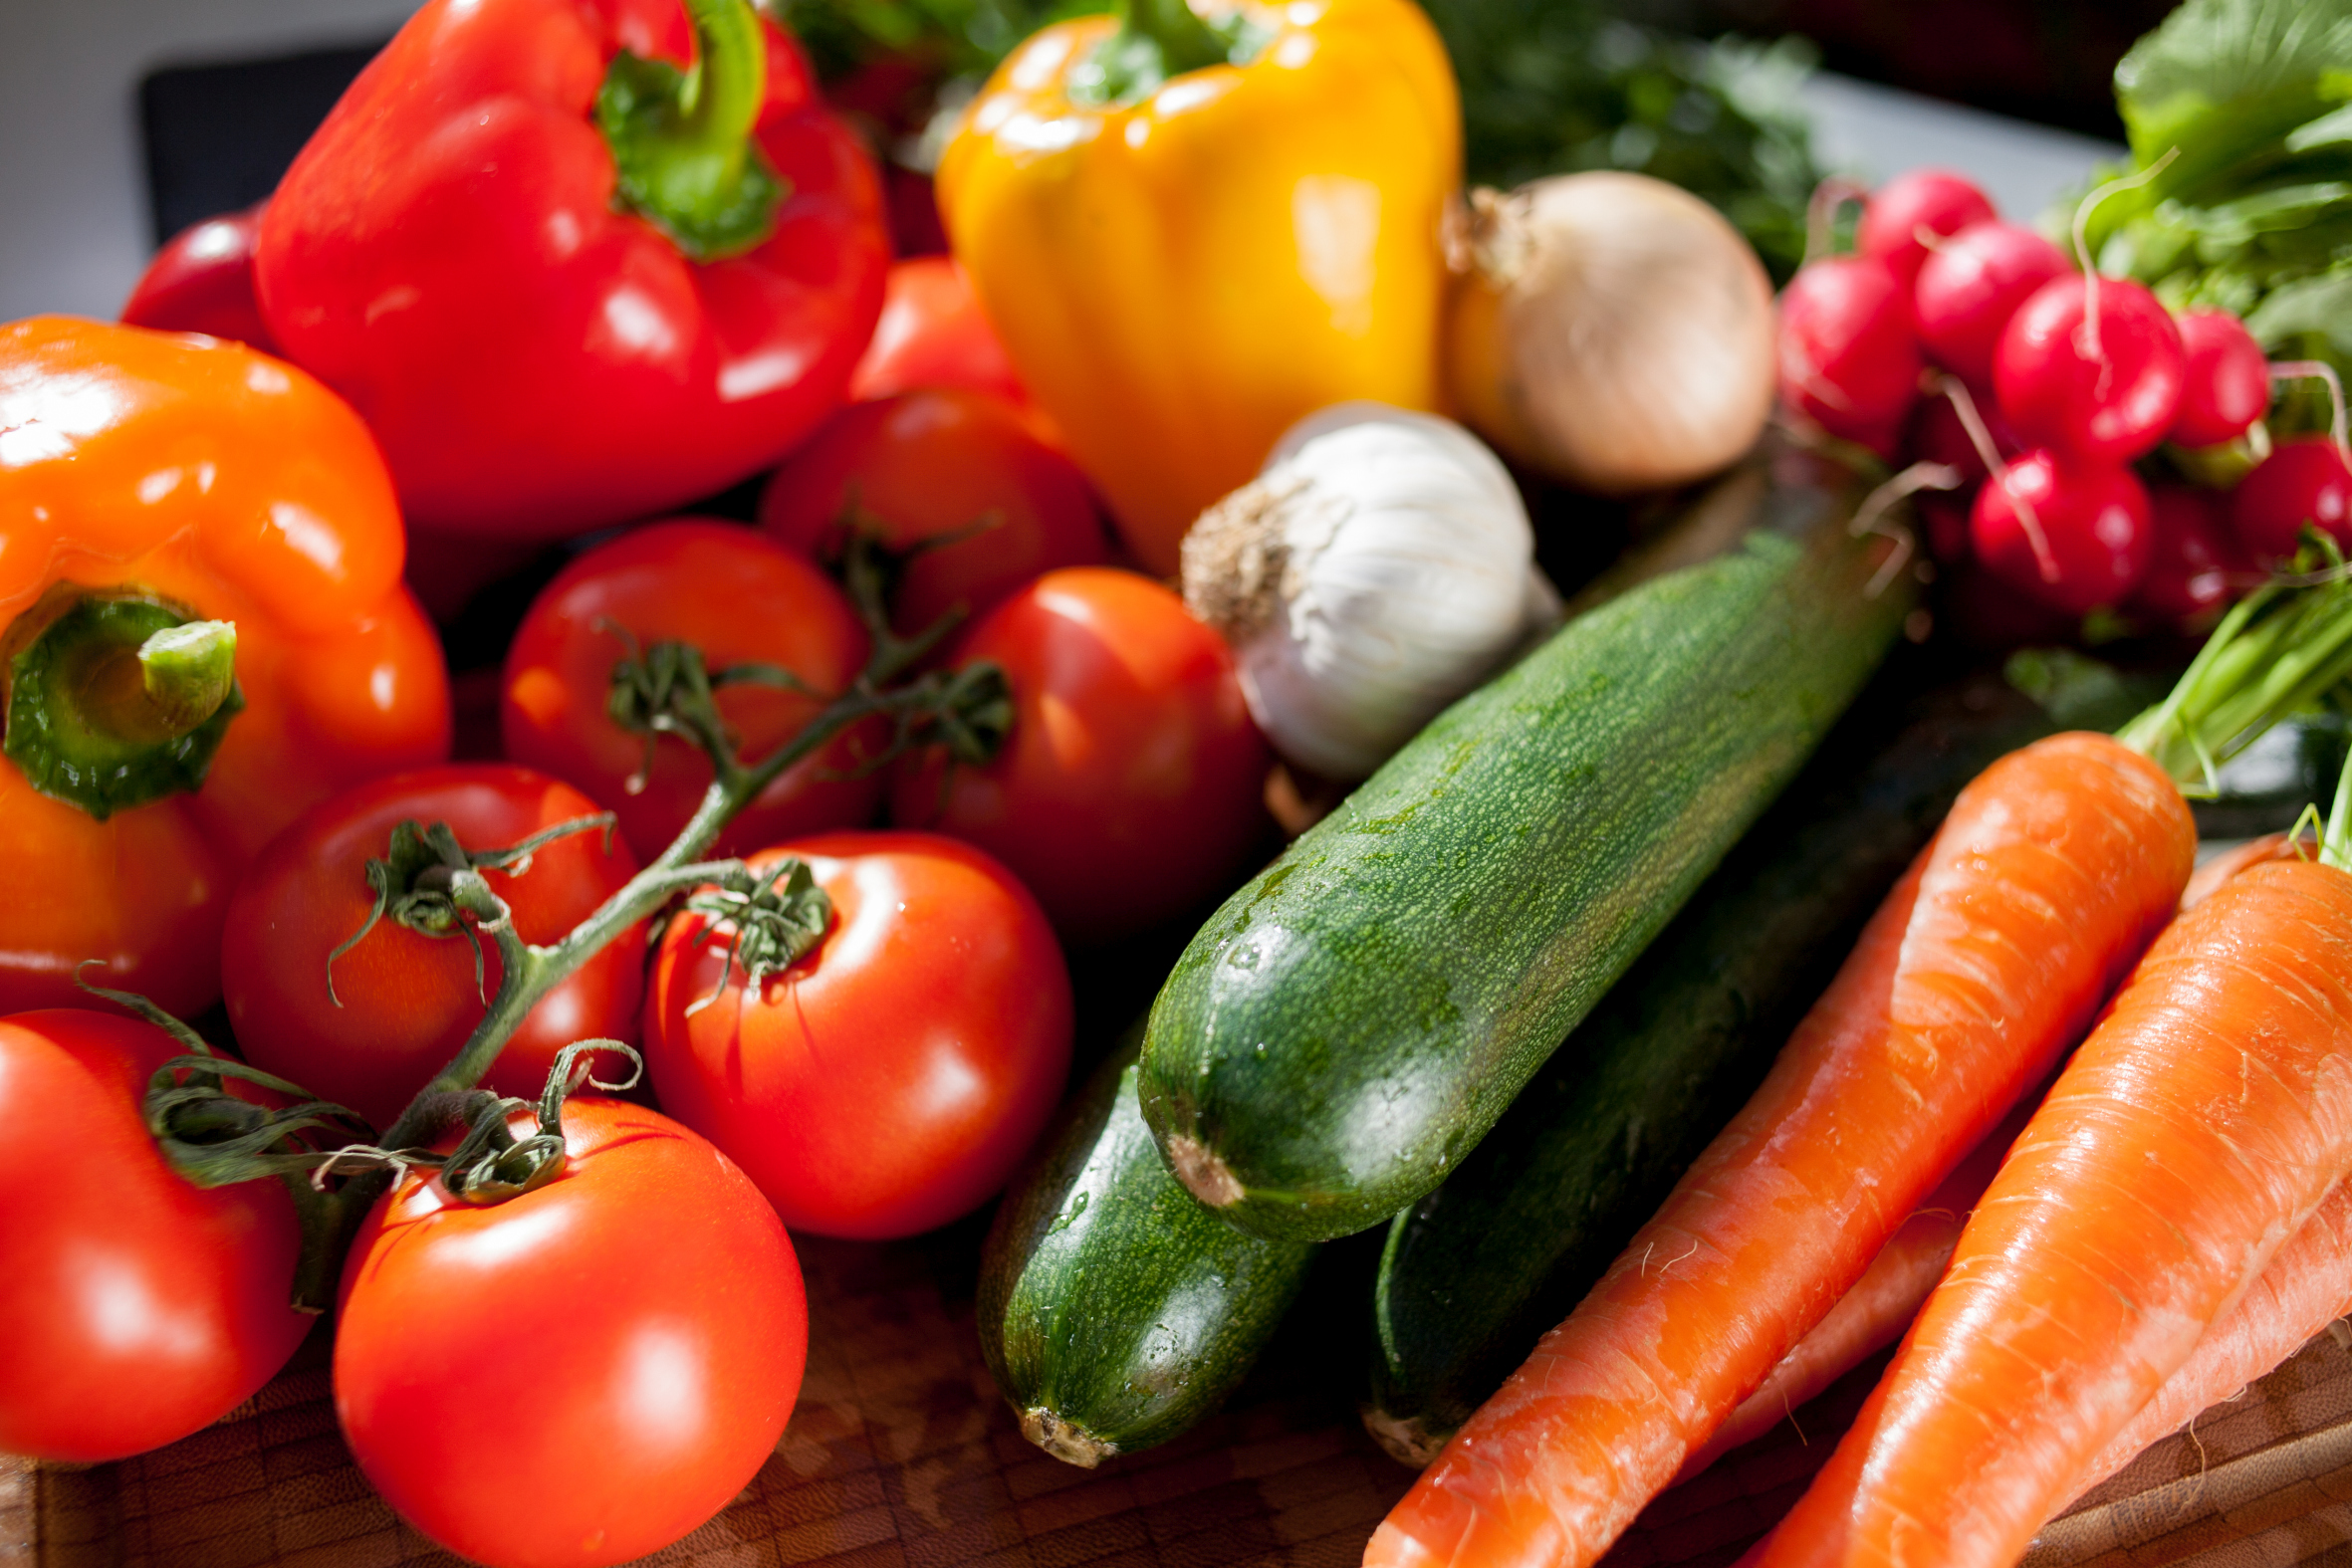 Bildunterschrift: Jetzt ist die Auswahl an heimischem Gemüse besonders groß. Ganz frische Ware gibt es direkt beim Gemüsegärtner. (Bildnachweis: GMH/LVW)